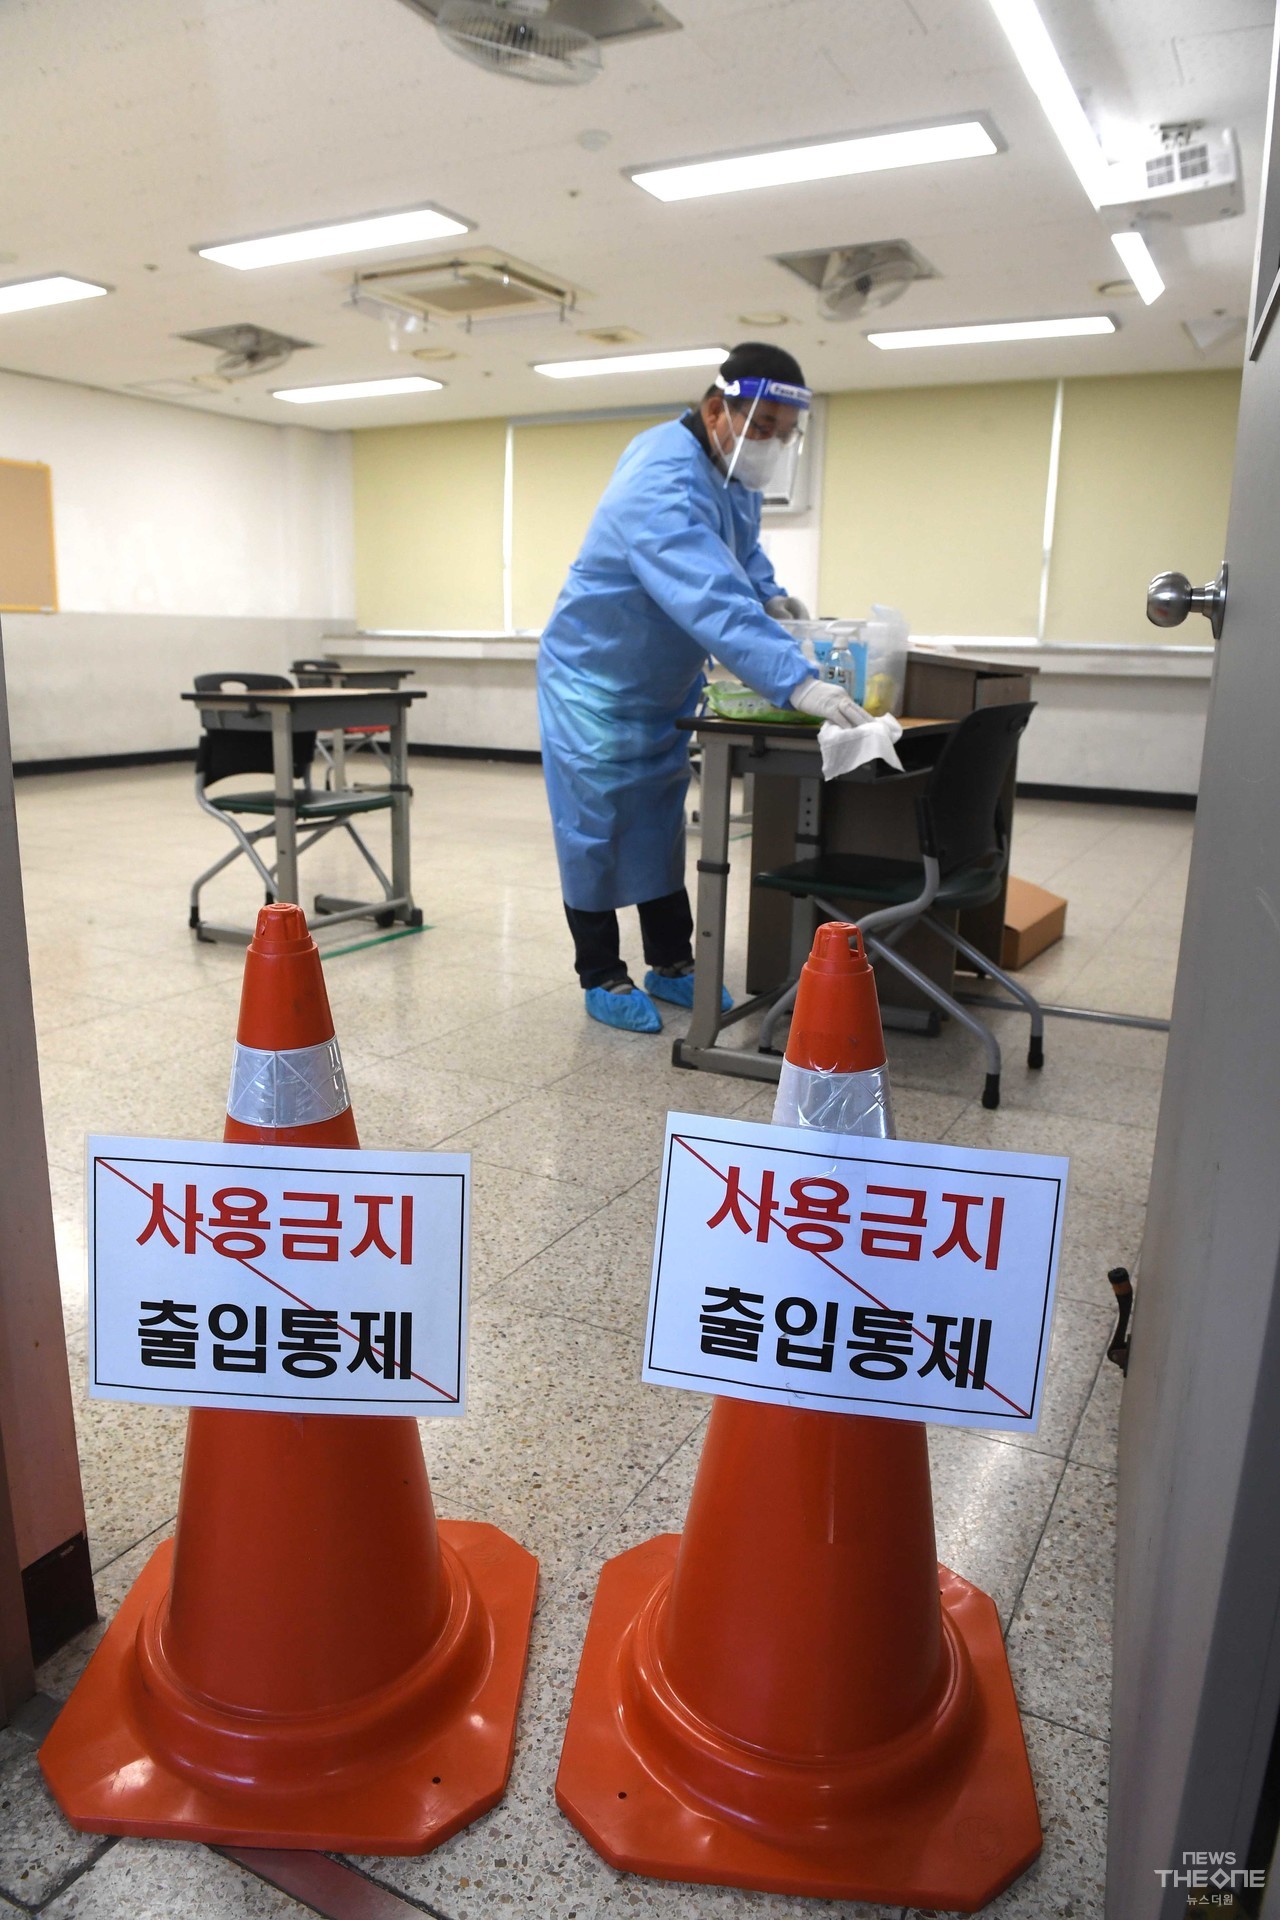 15일 오전 인천 해송고등학교에 마련된 별도시험장에서 방역담당교사가 소독을 하고 있다. ⓒ임순석 기자